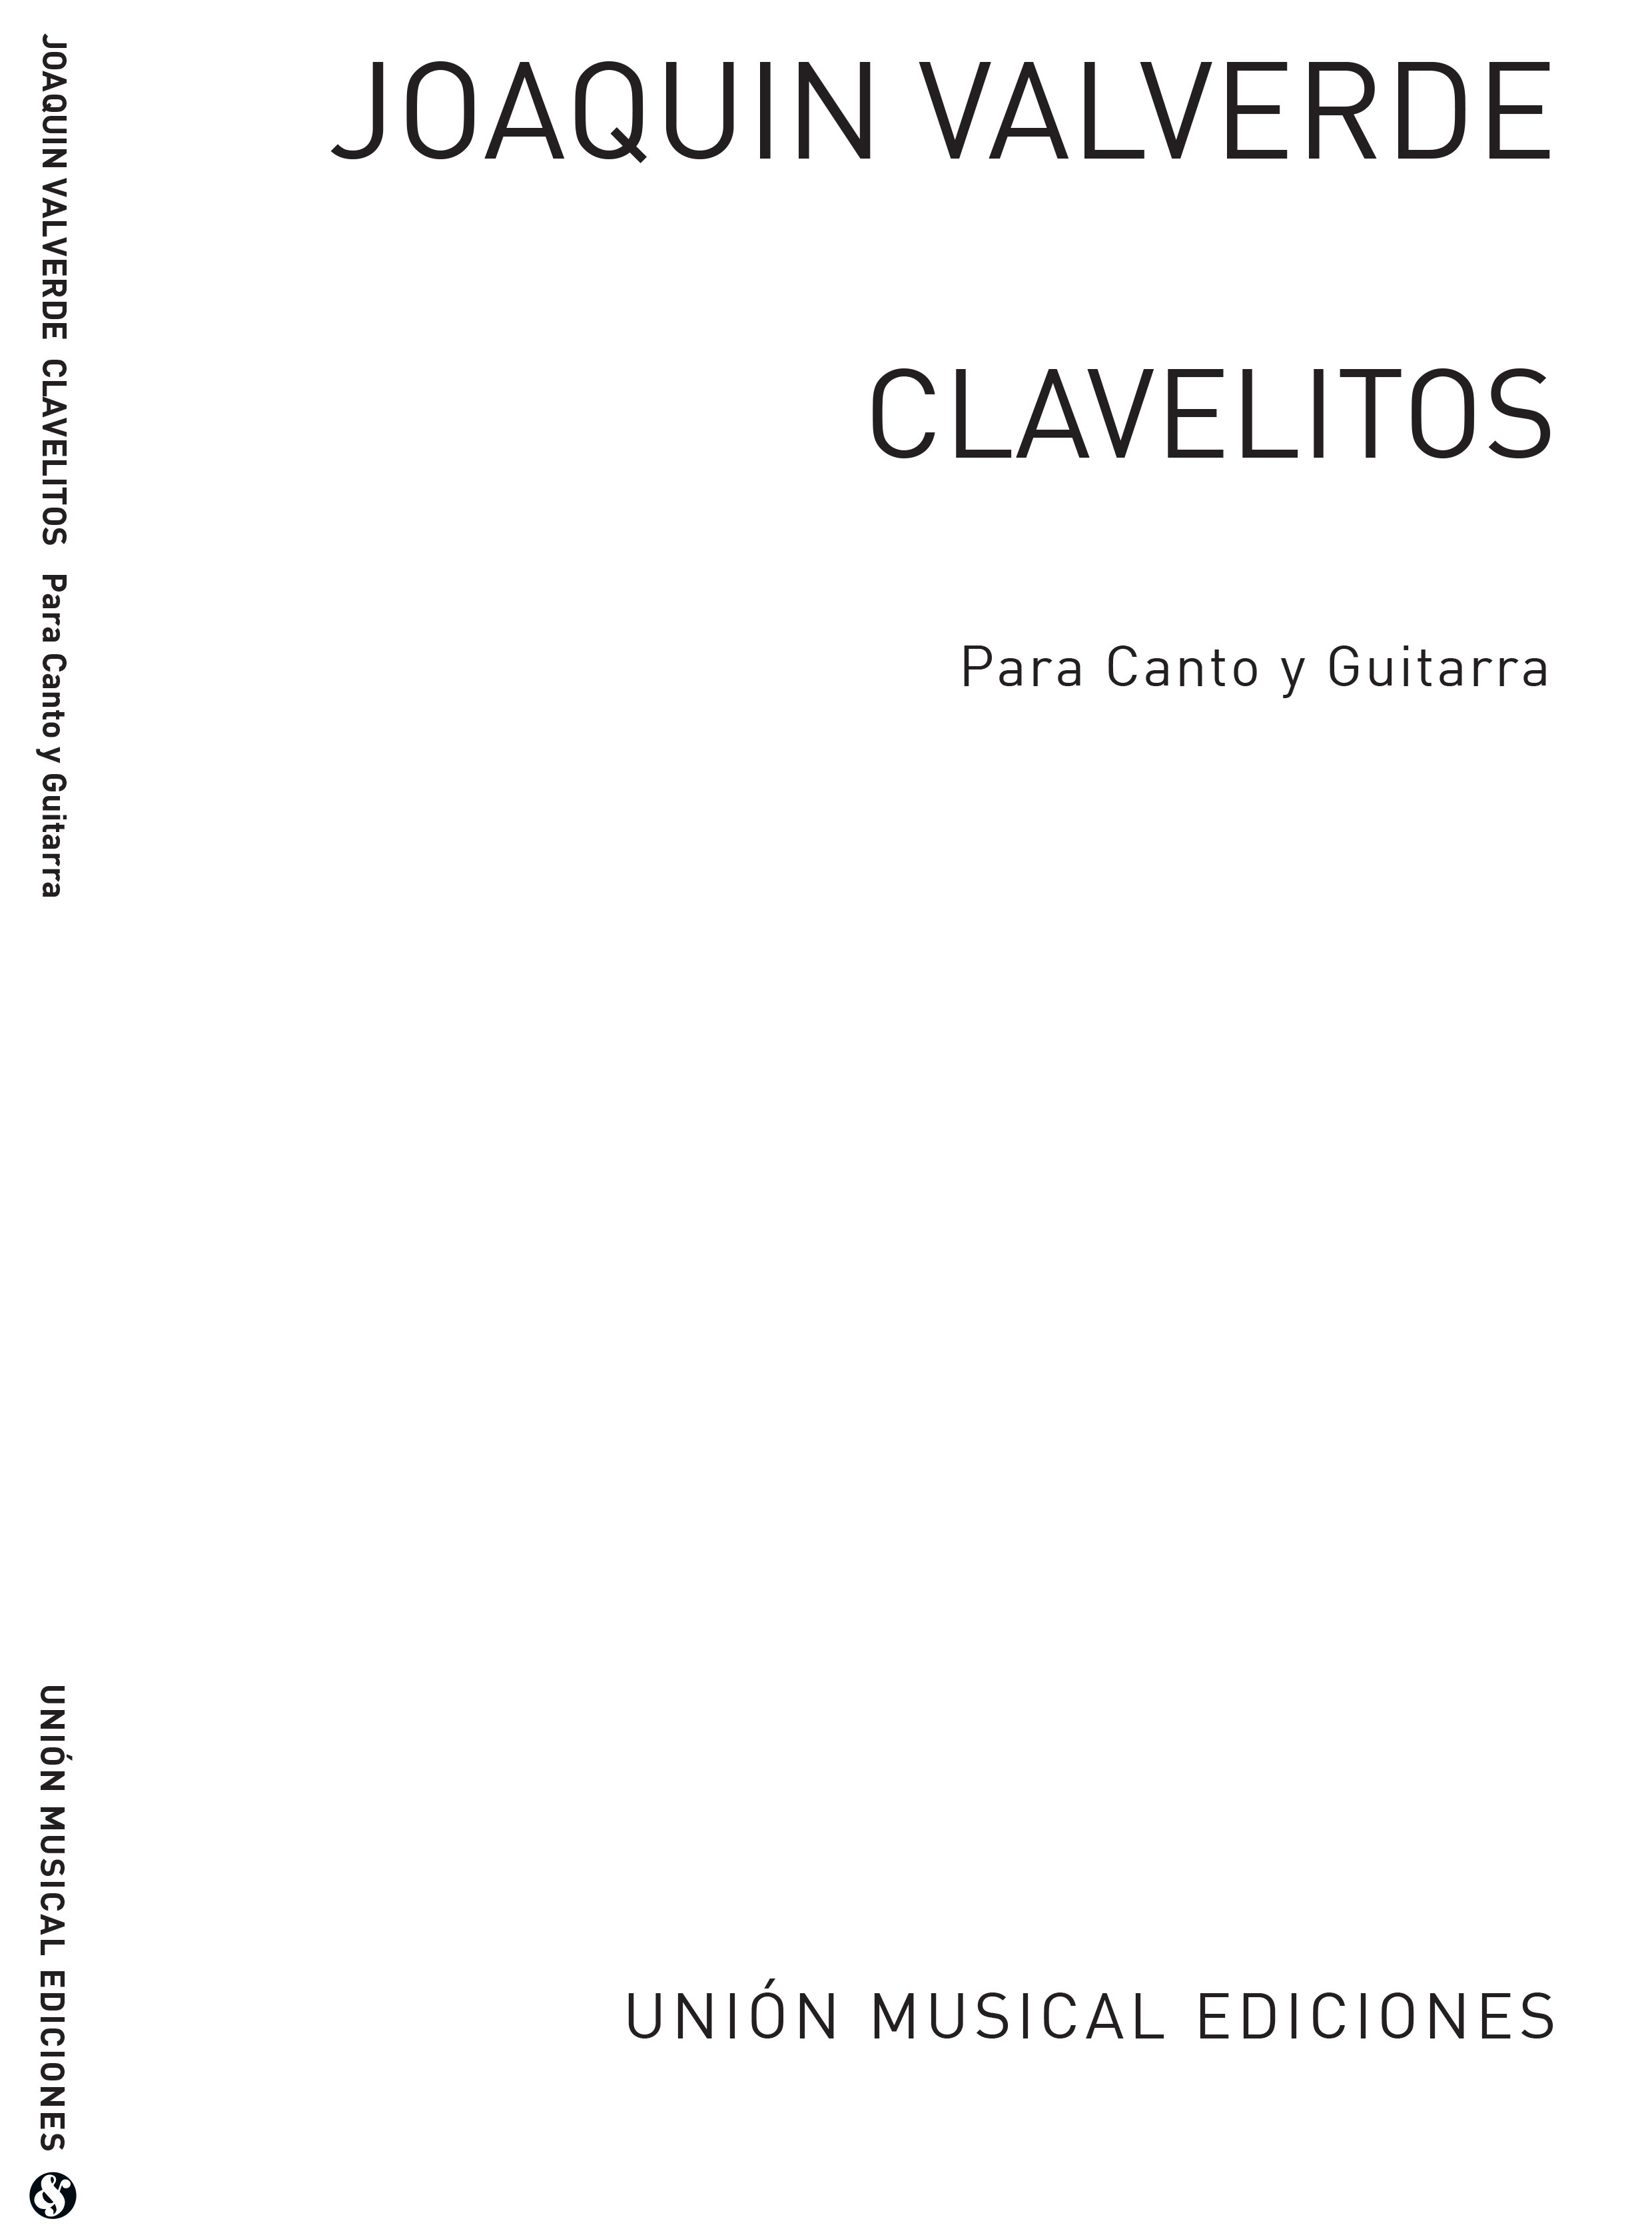 Joaquin Valverde: Clavelitos: Voice: Instrumental Work